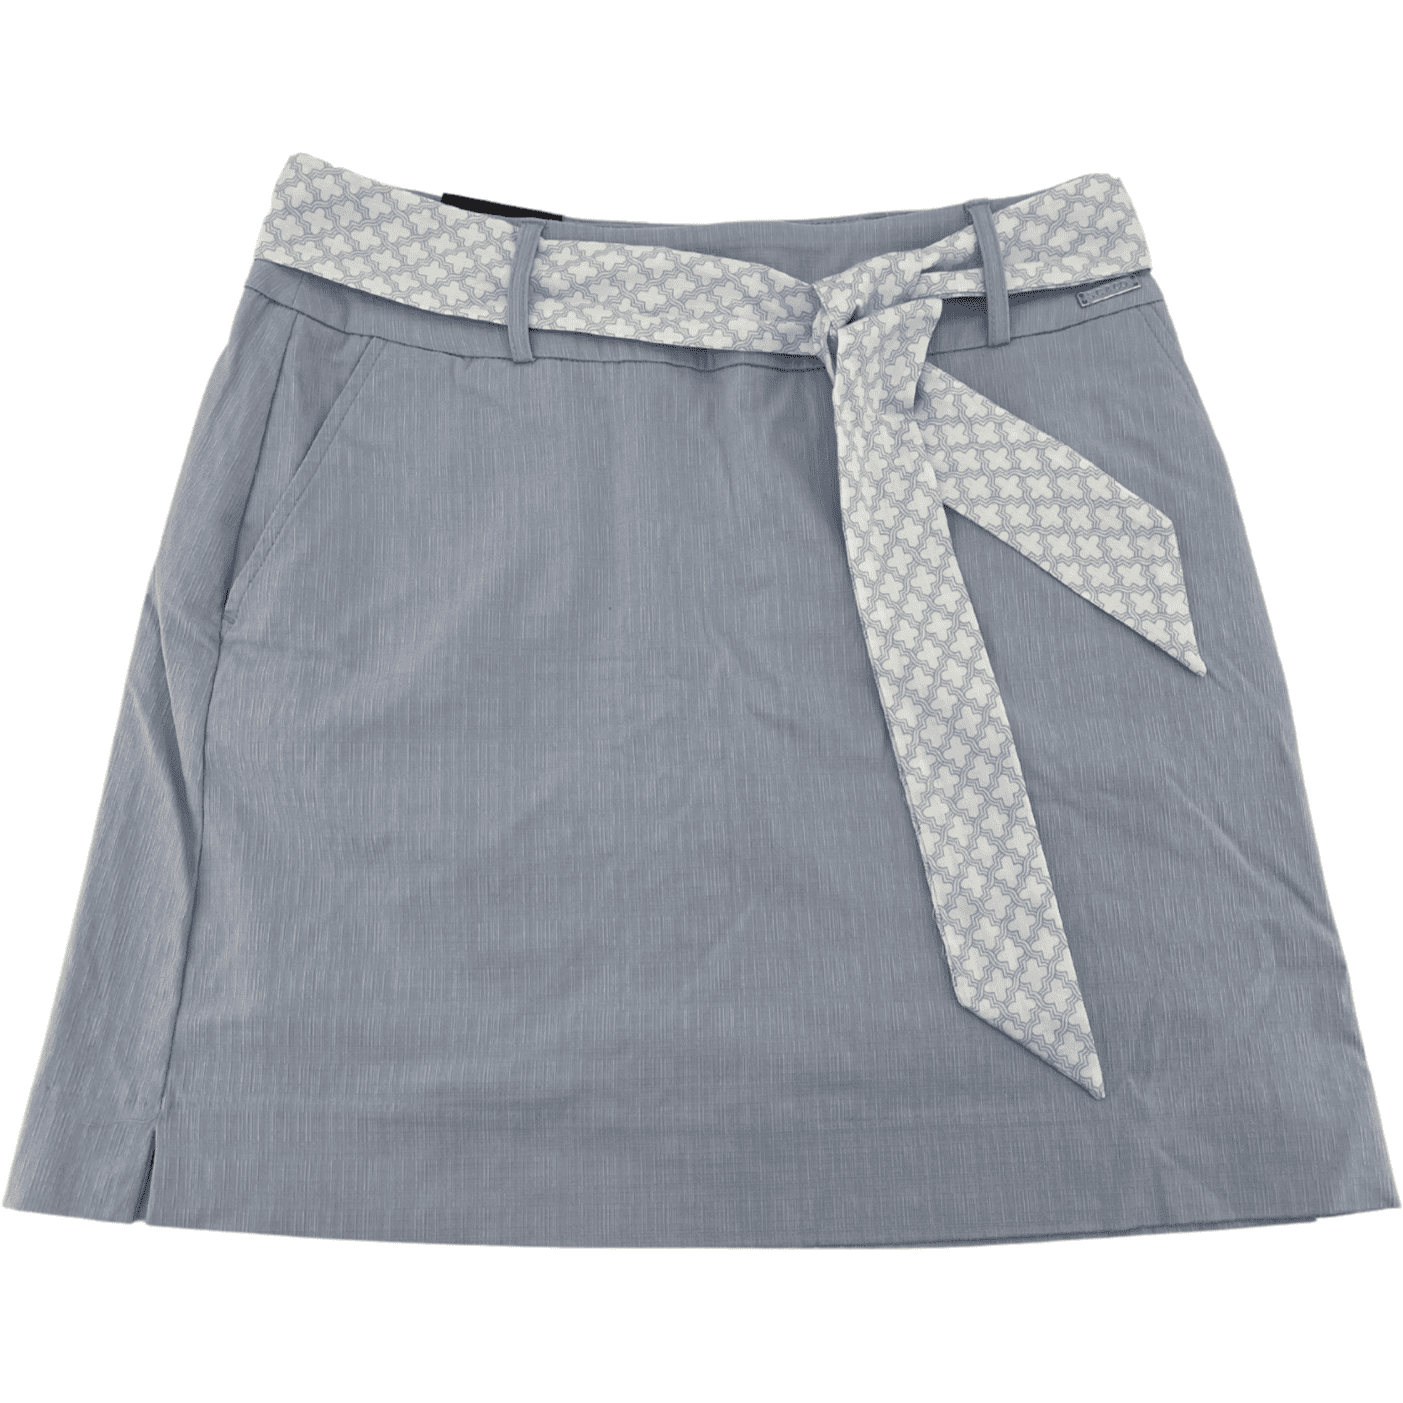 S.C & Co. Women's Skort / Skirt with Belt / Light Blue / Various Sizes **MARKED**